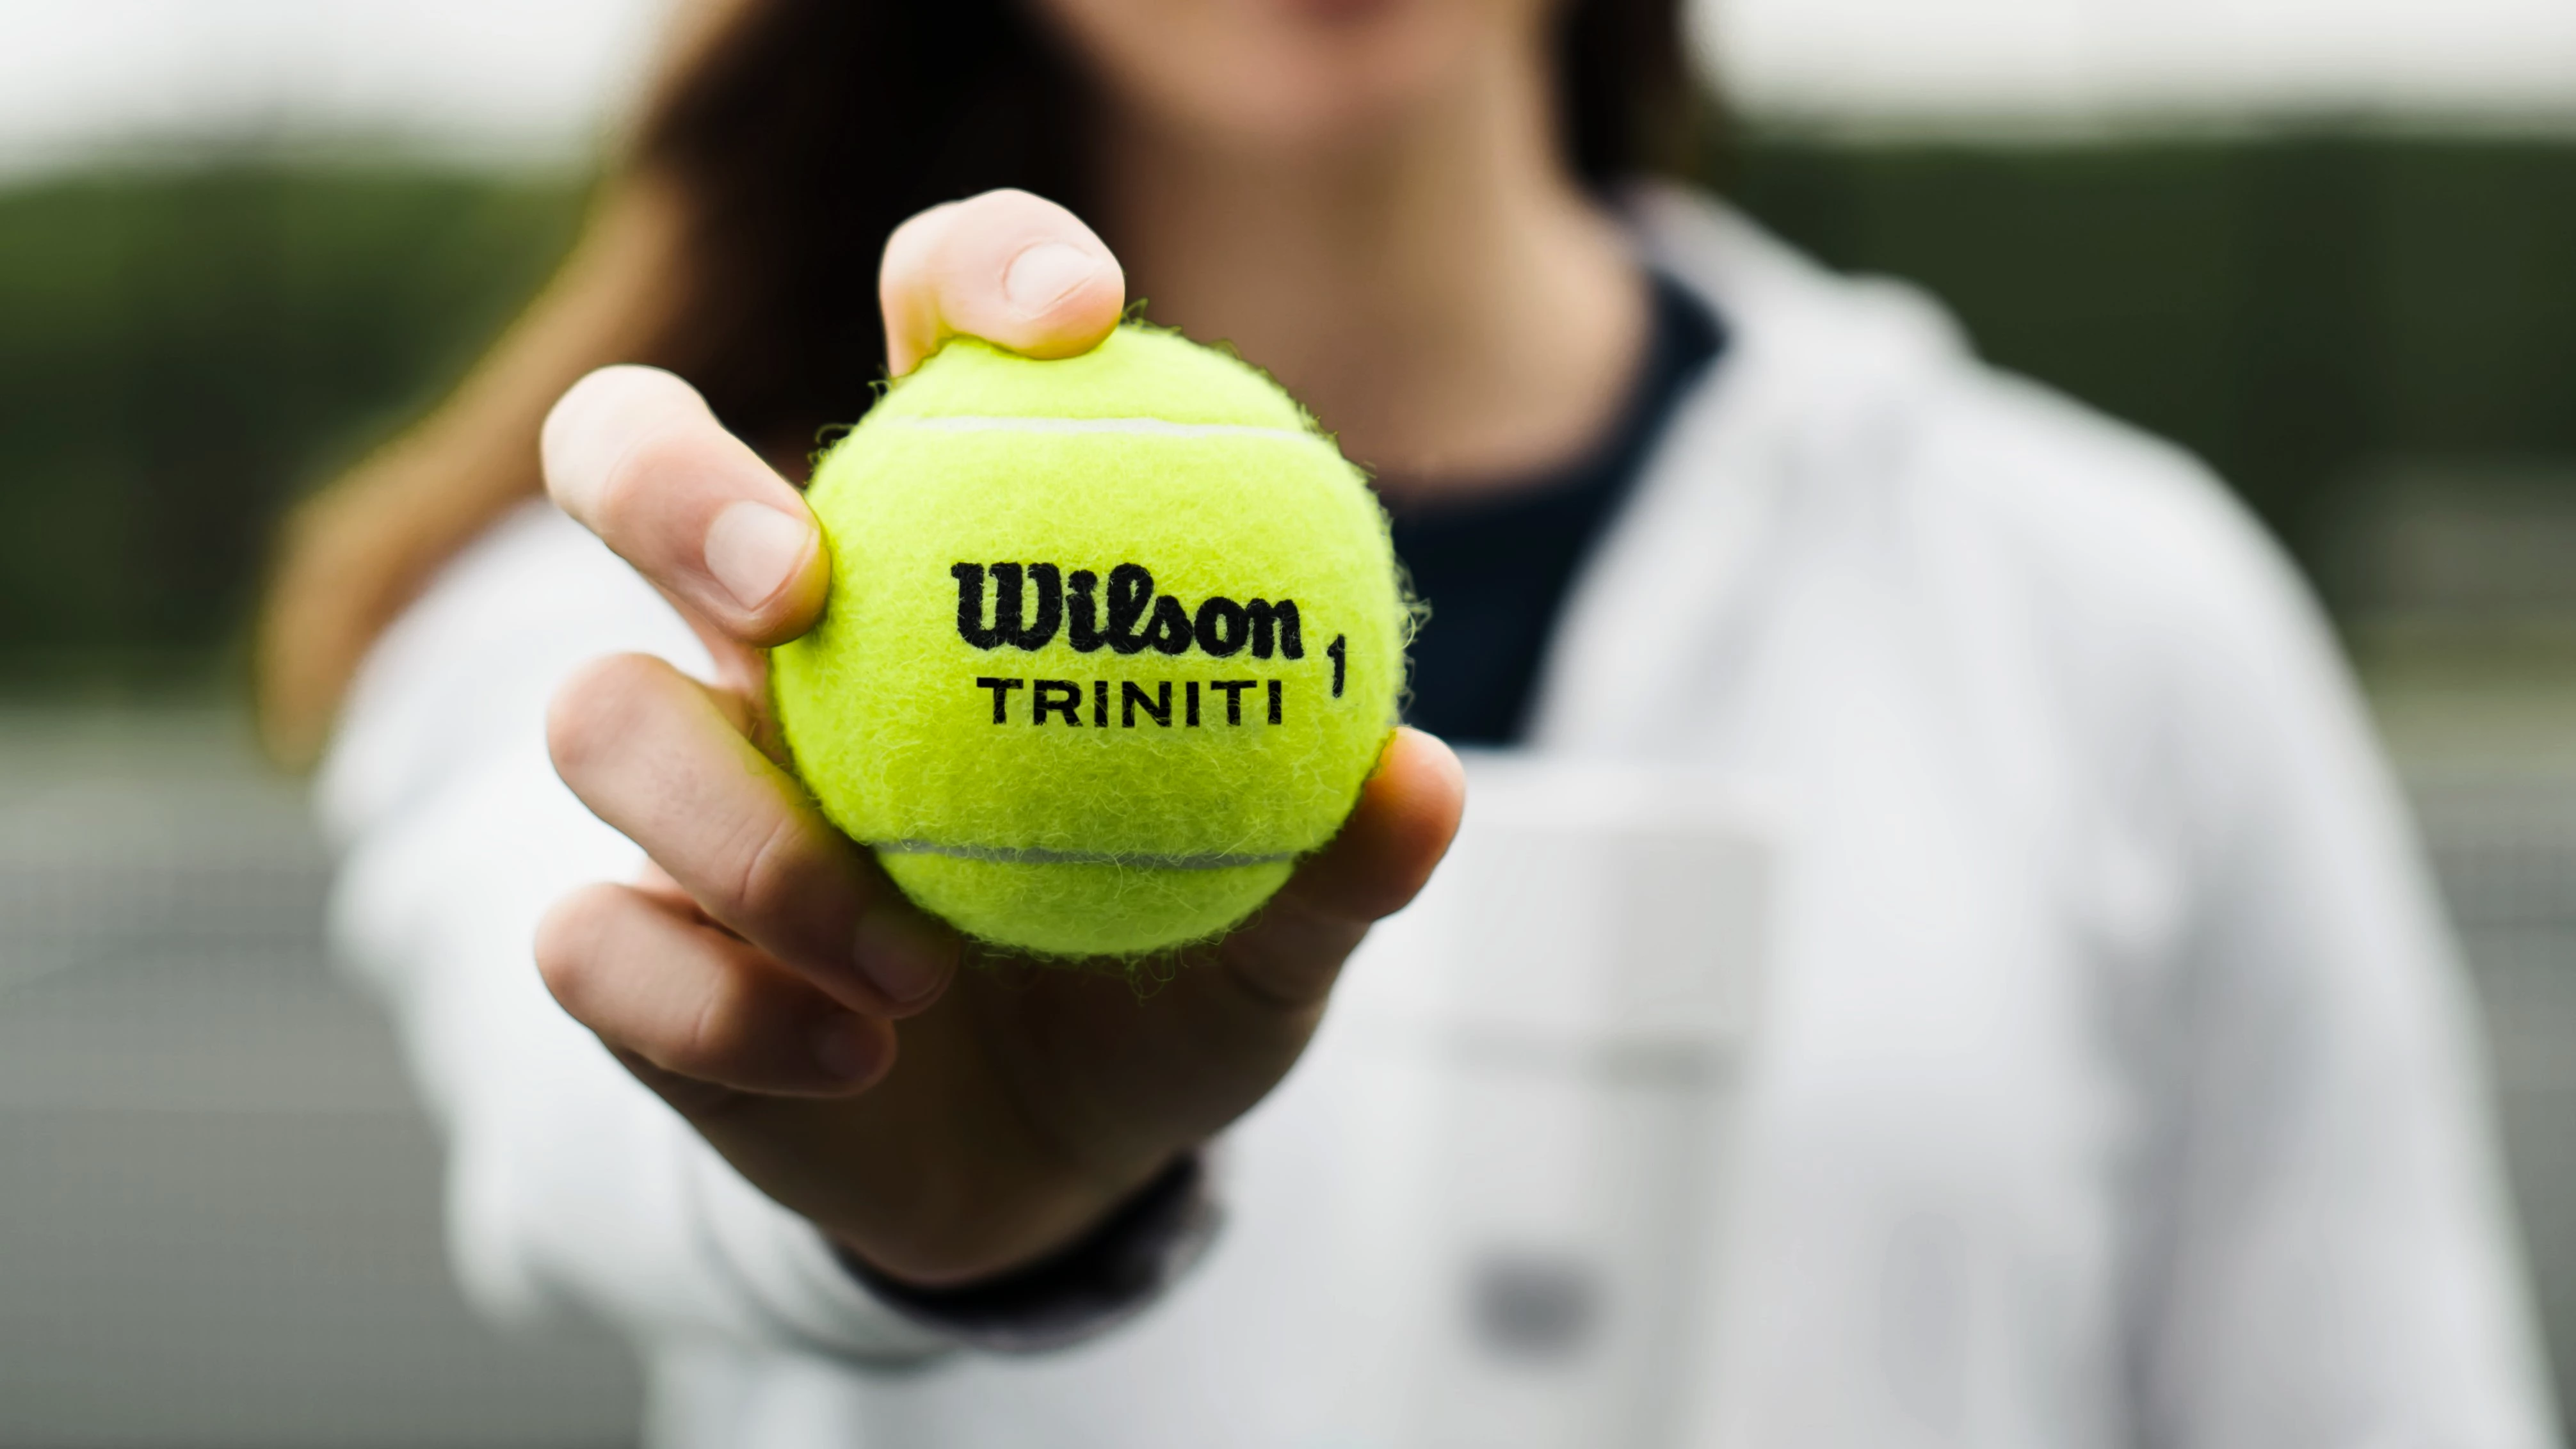 Wilson Triniti tennisballen